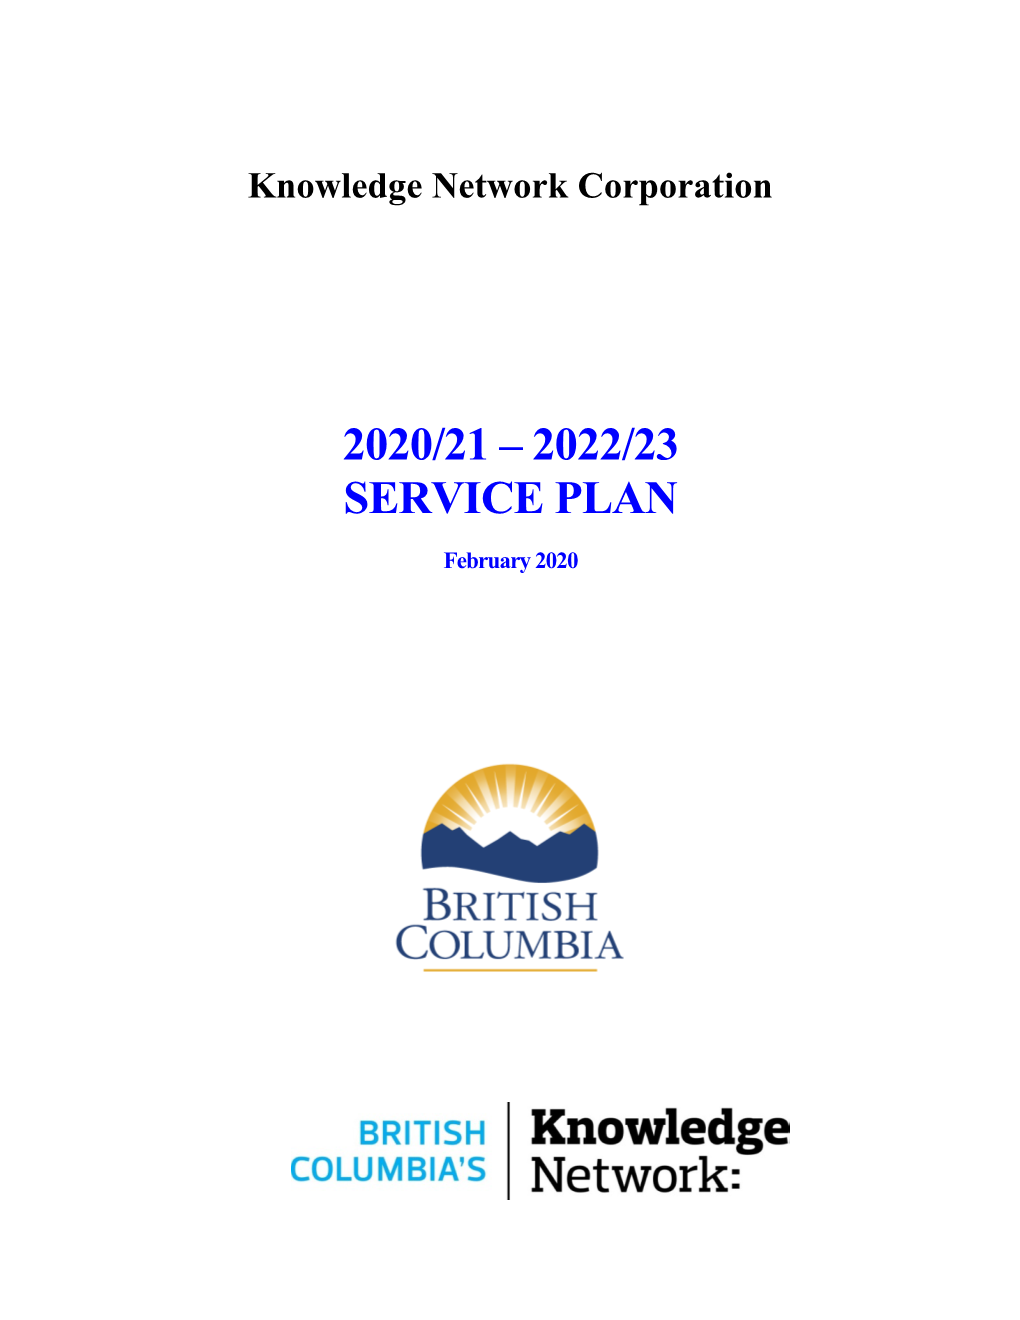 2020/21 – 2022/23 Service Plan